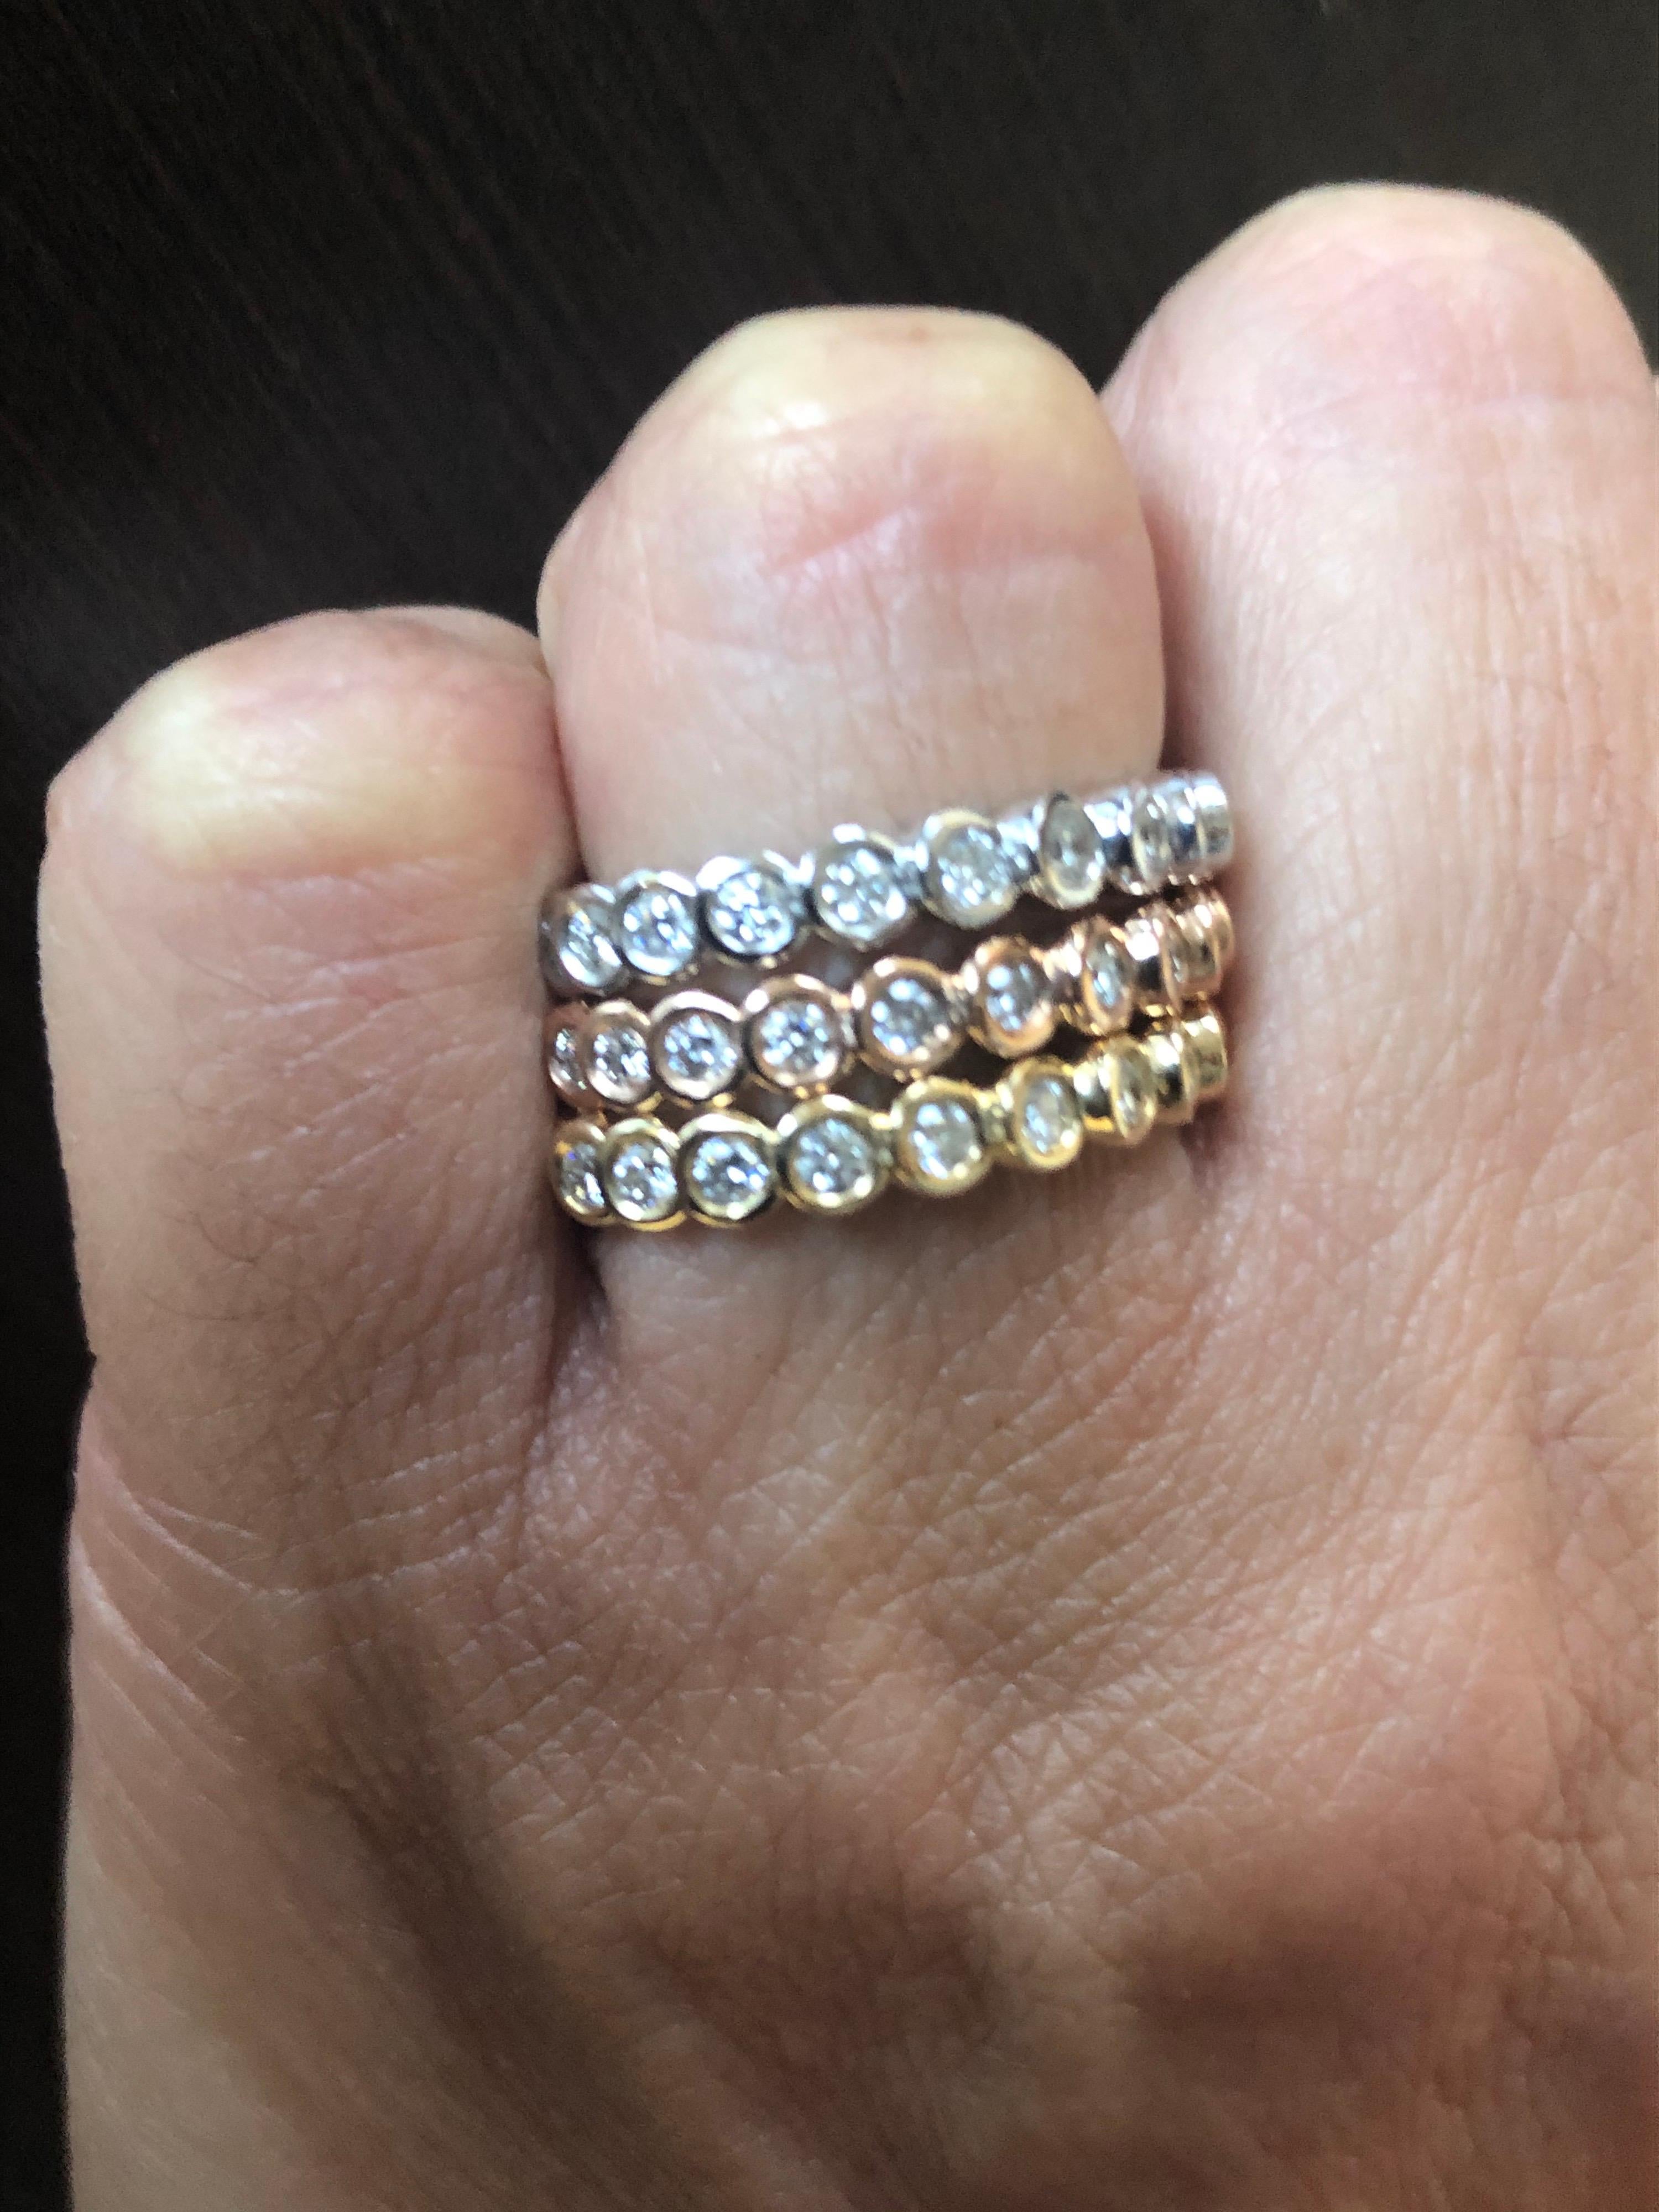 14K Weiß-, Gelb- und Roségold Ringe mit Lünettenfassung 3/4 um Ewigkeit. Das Gesamtgewicht eines jeden Rings beträgt 0,51 Karat. Jeder Ring ist mit 17 Steinen besetzt. Die Farbe der Steine ist G-H, die Reinheit ist SI1. Die Ringe werden als Set